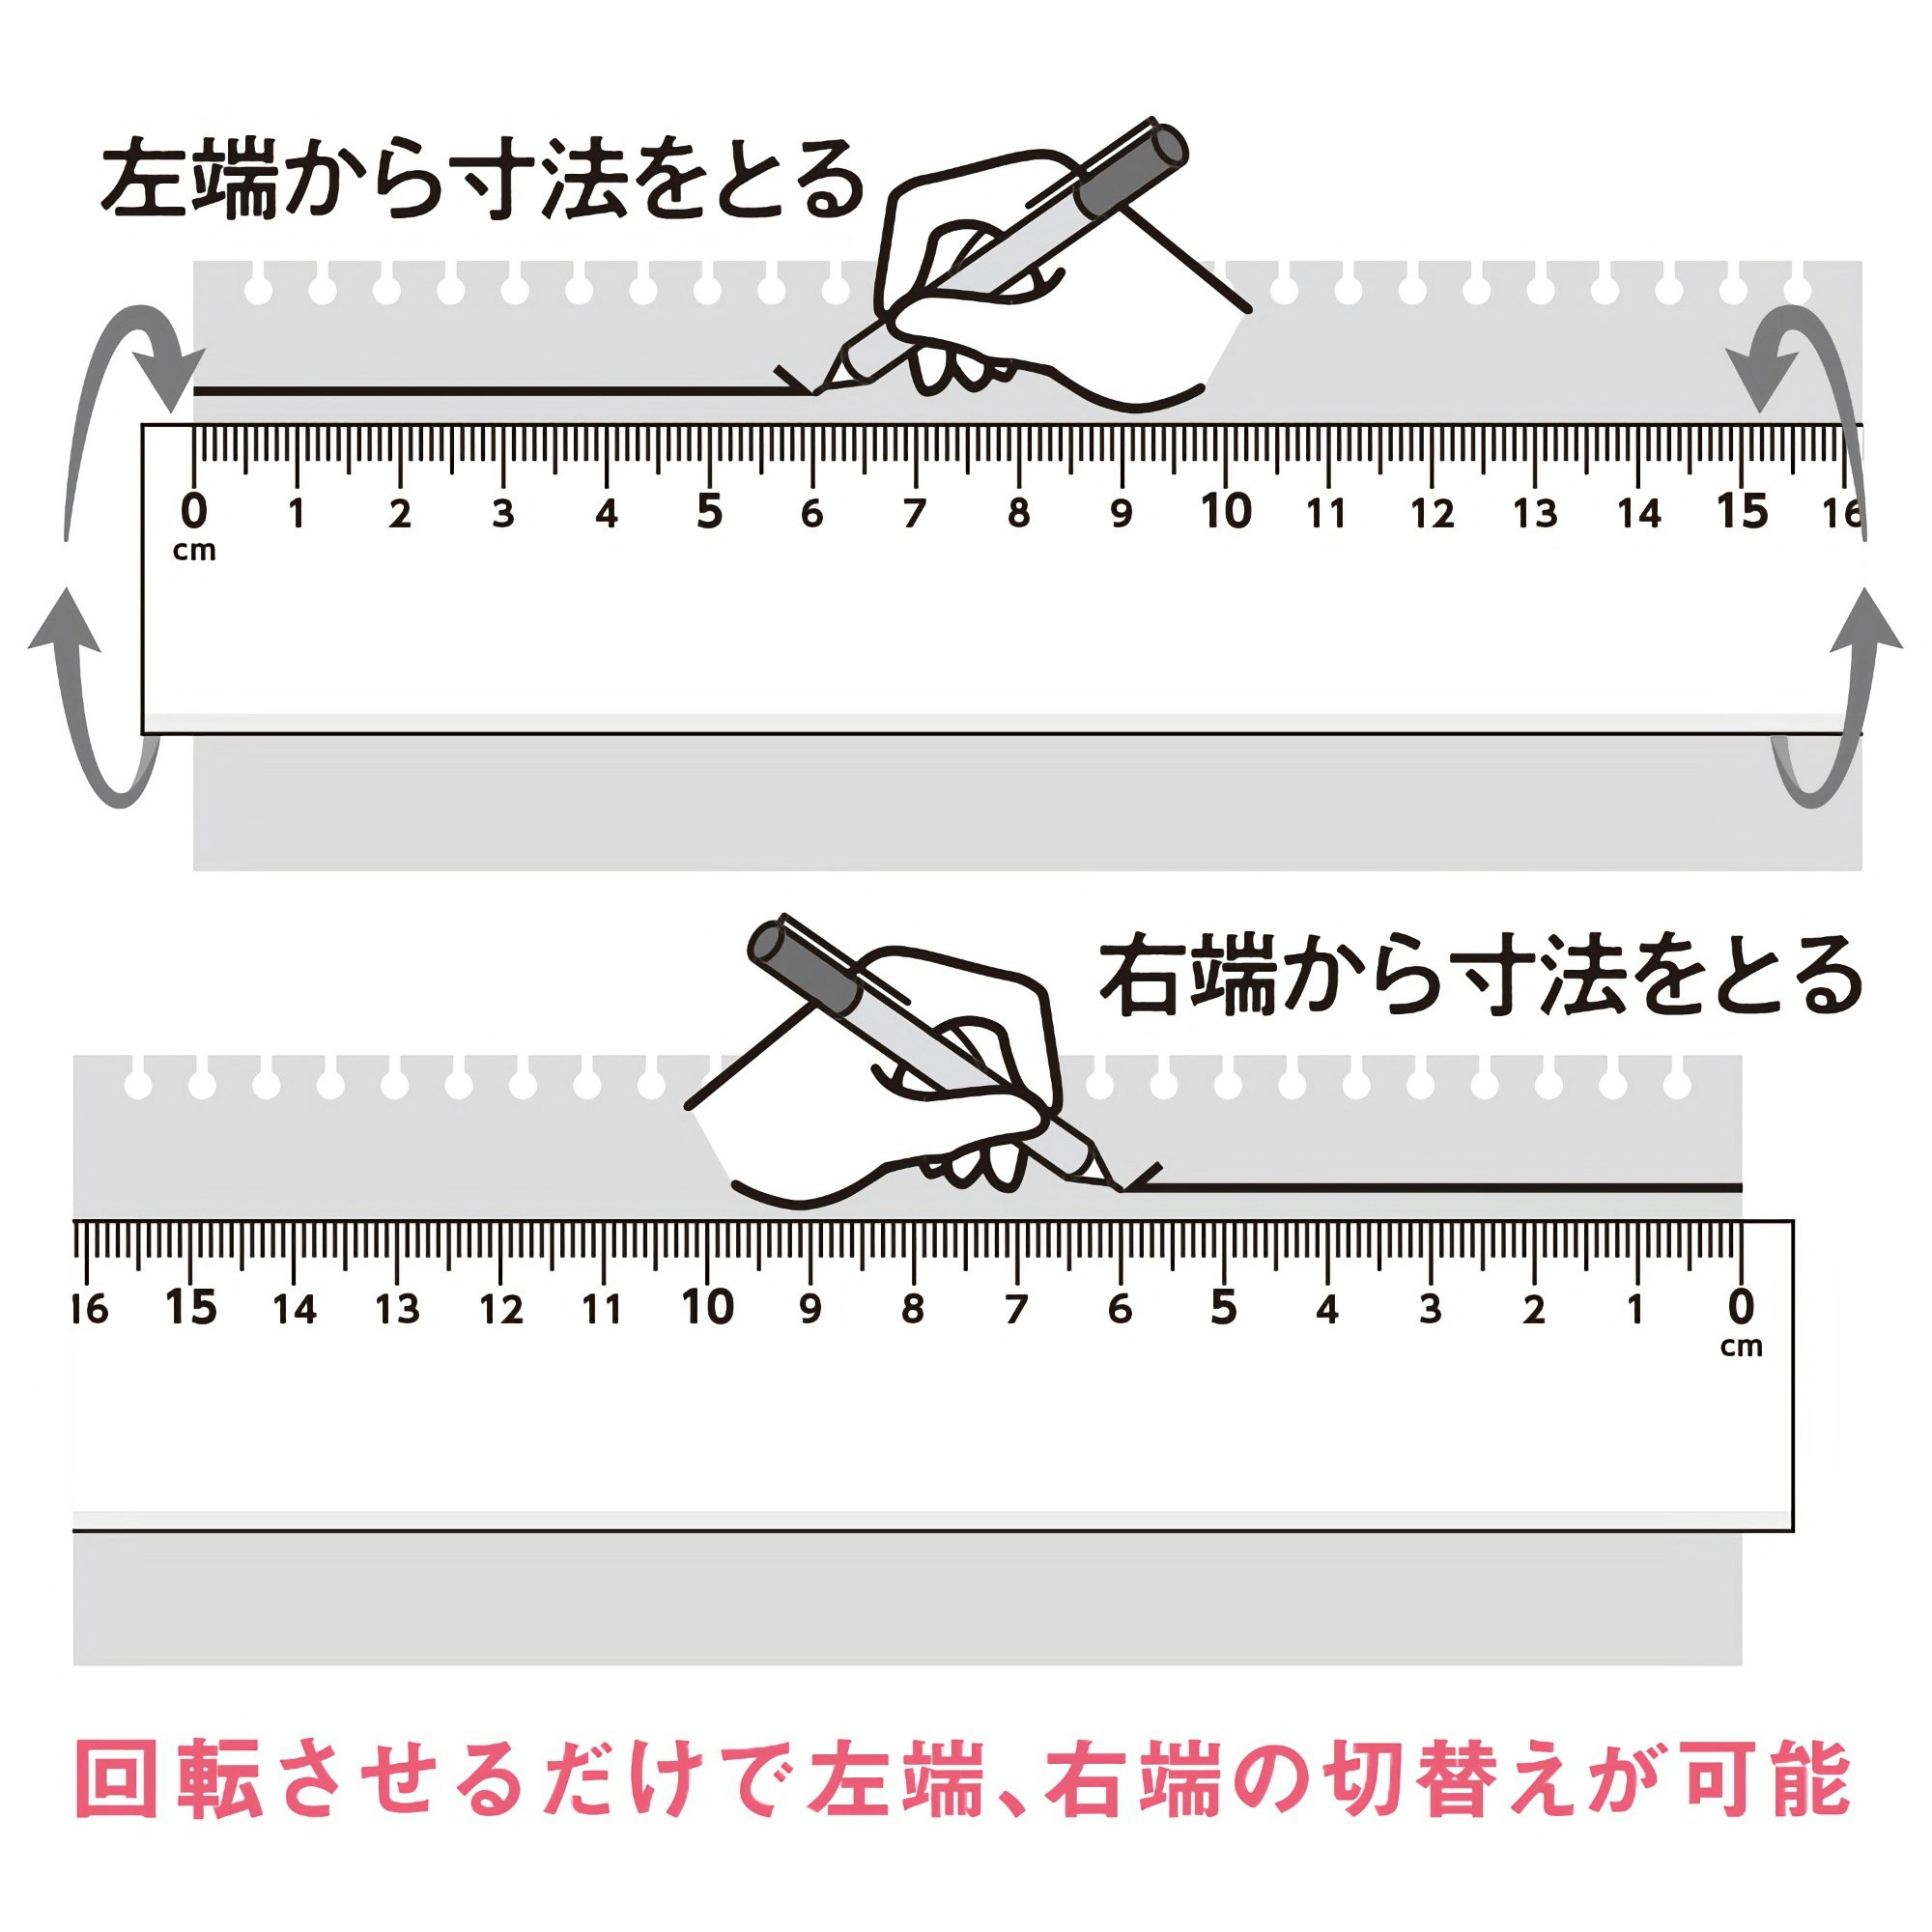 Kyoei Orions LR Left & Right Handed Ruler 20 cm White